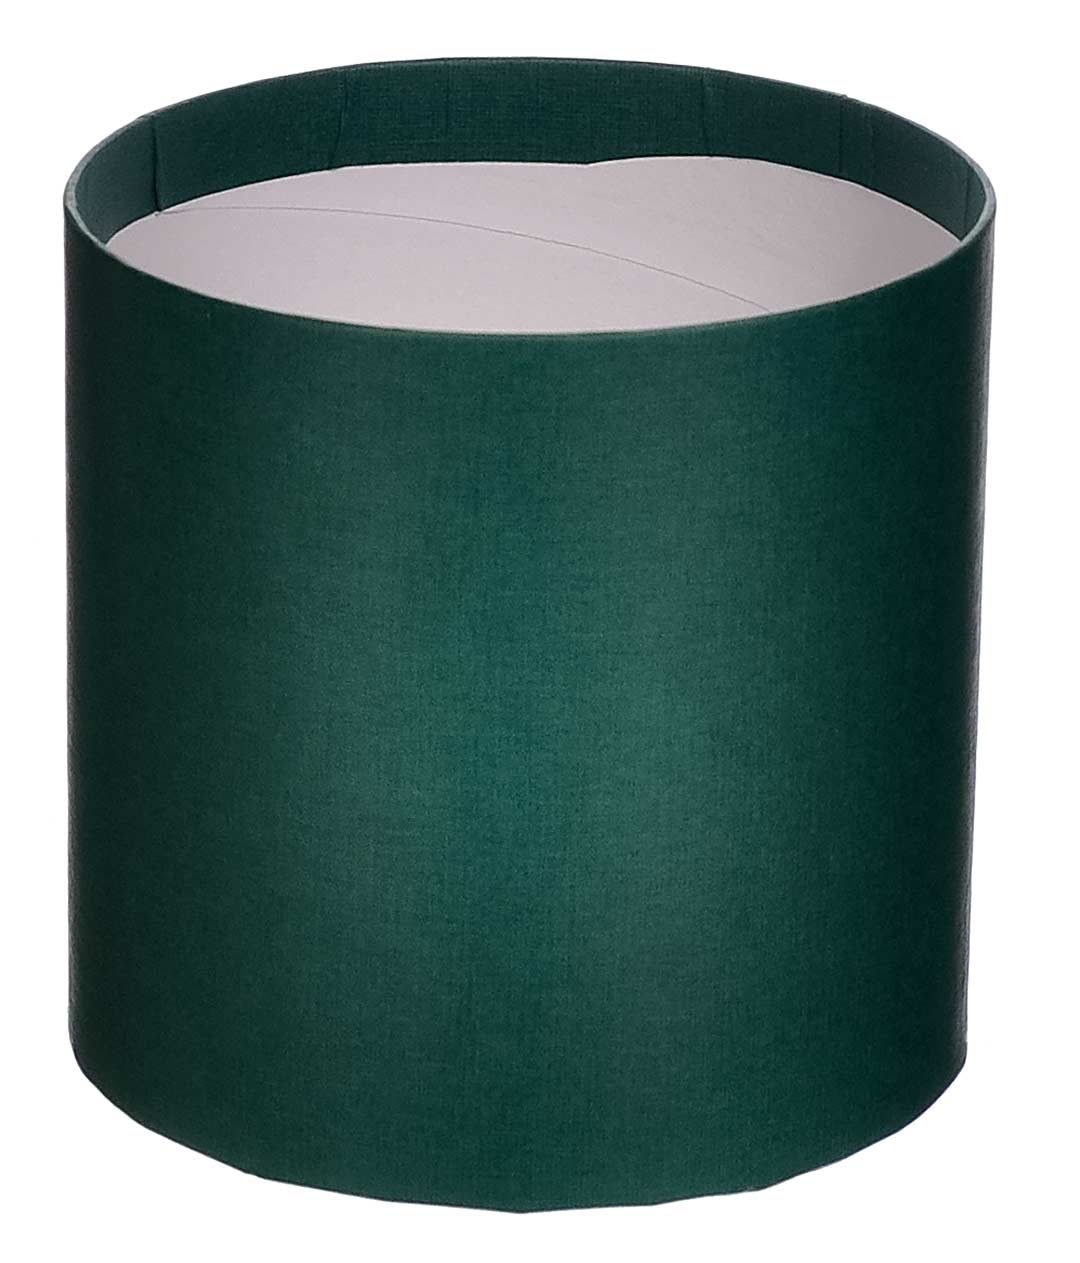 Изображение Коробка круглая для цветов темно-зеленая из бумаги 100/100 без крышки